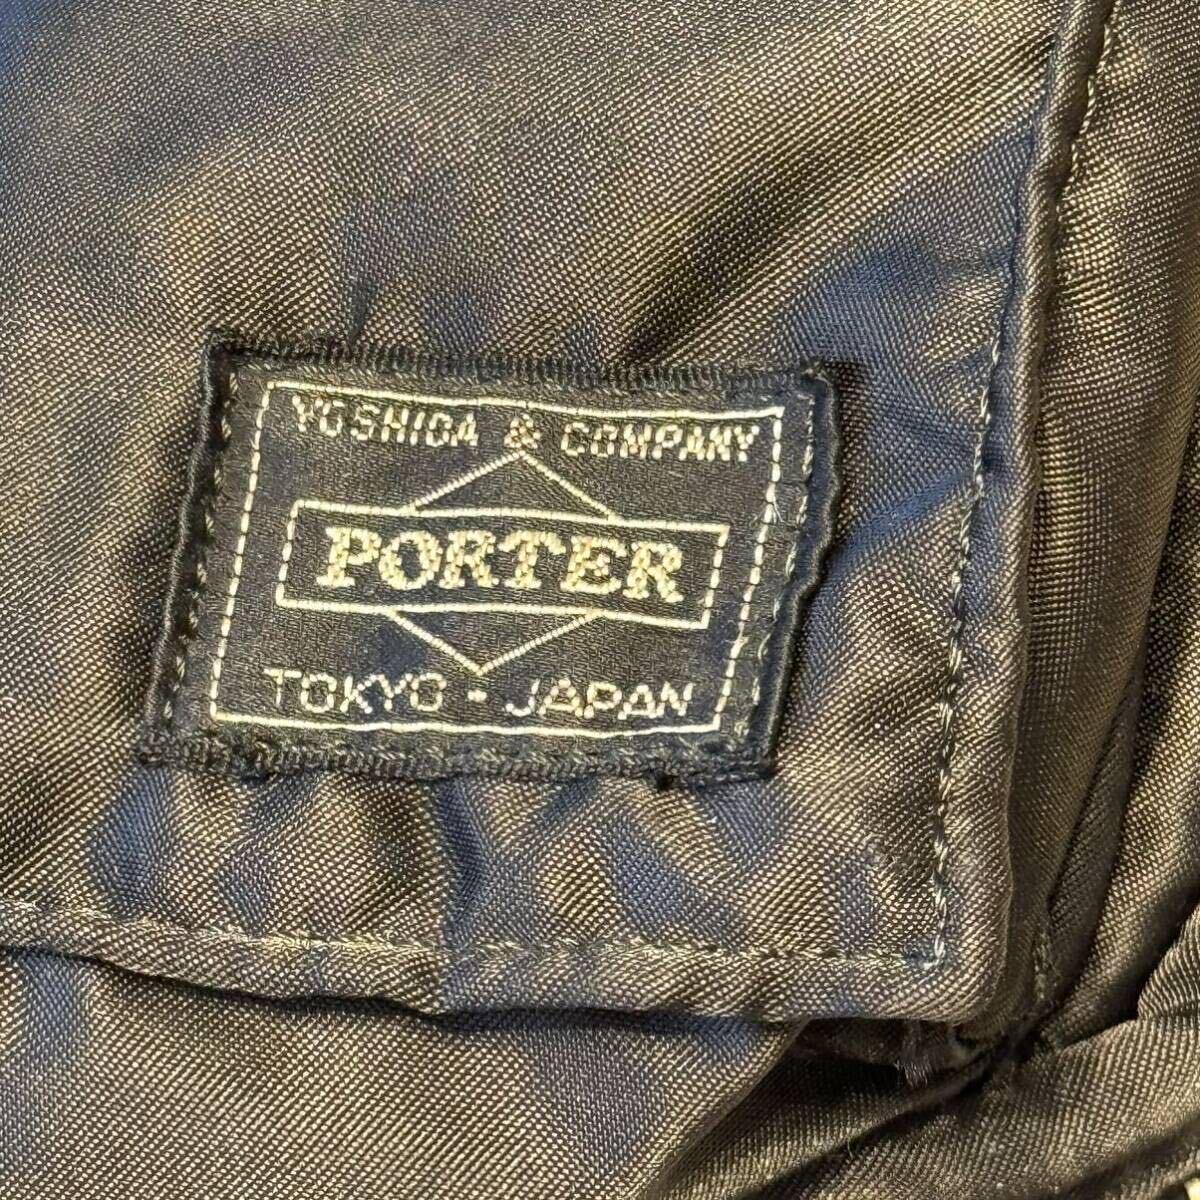 PORTER Porter TANKER язык машина Yoshida bag сумка на плечо черный б/у прекрасный товар 